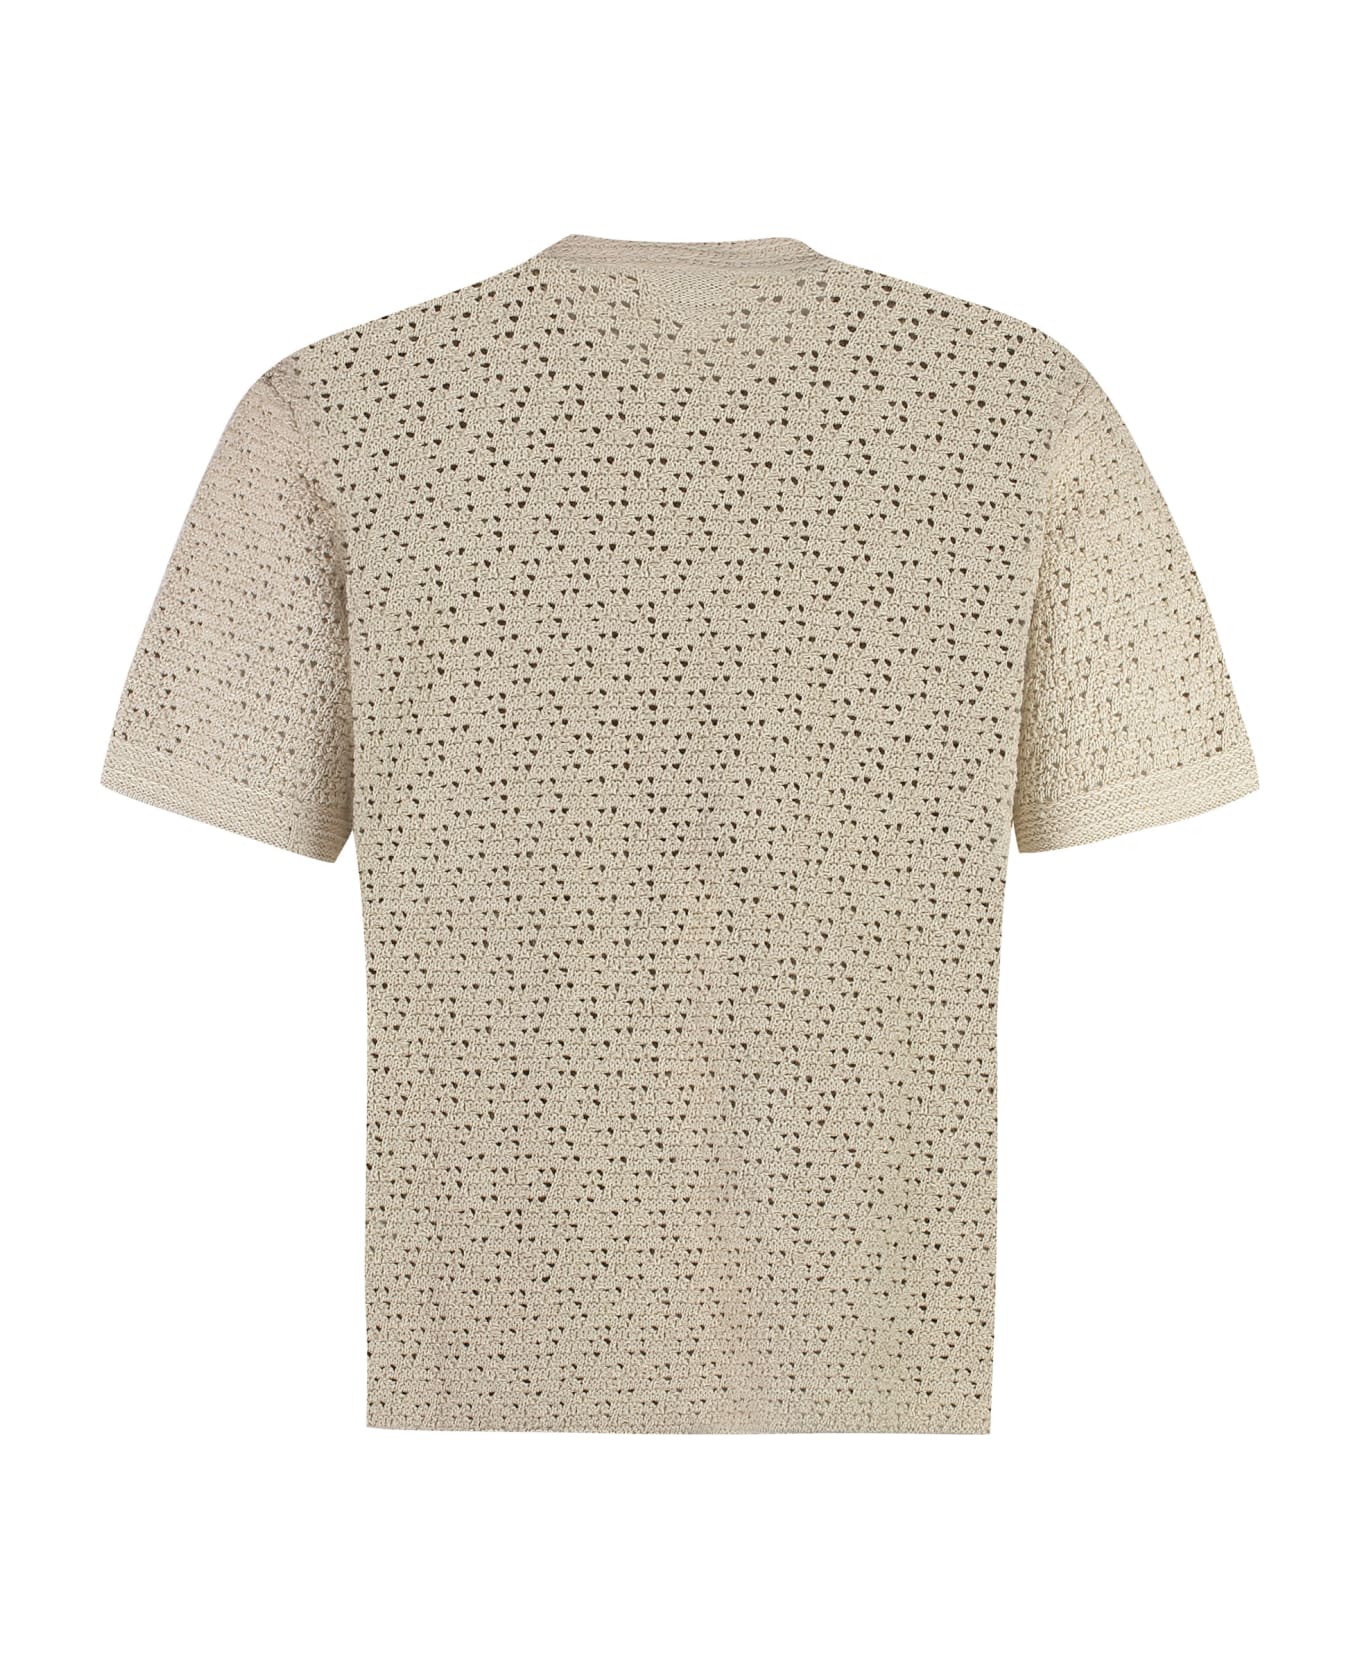 Bottega Veneta Cotton Knit T-shirt - Sand シャツ